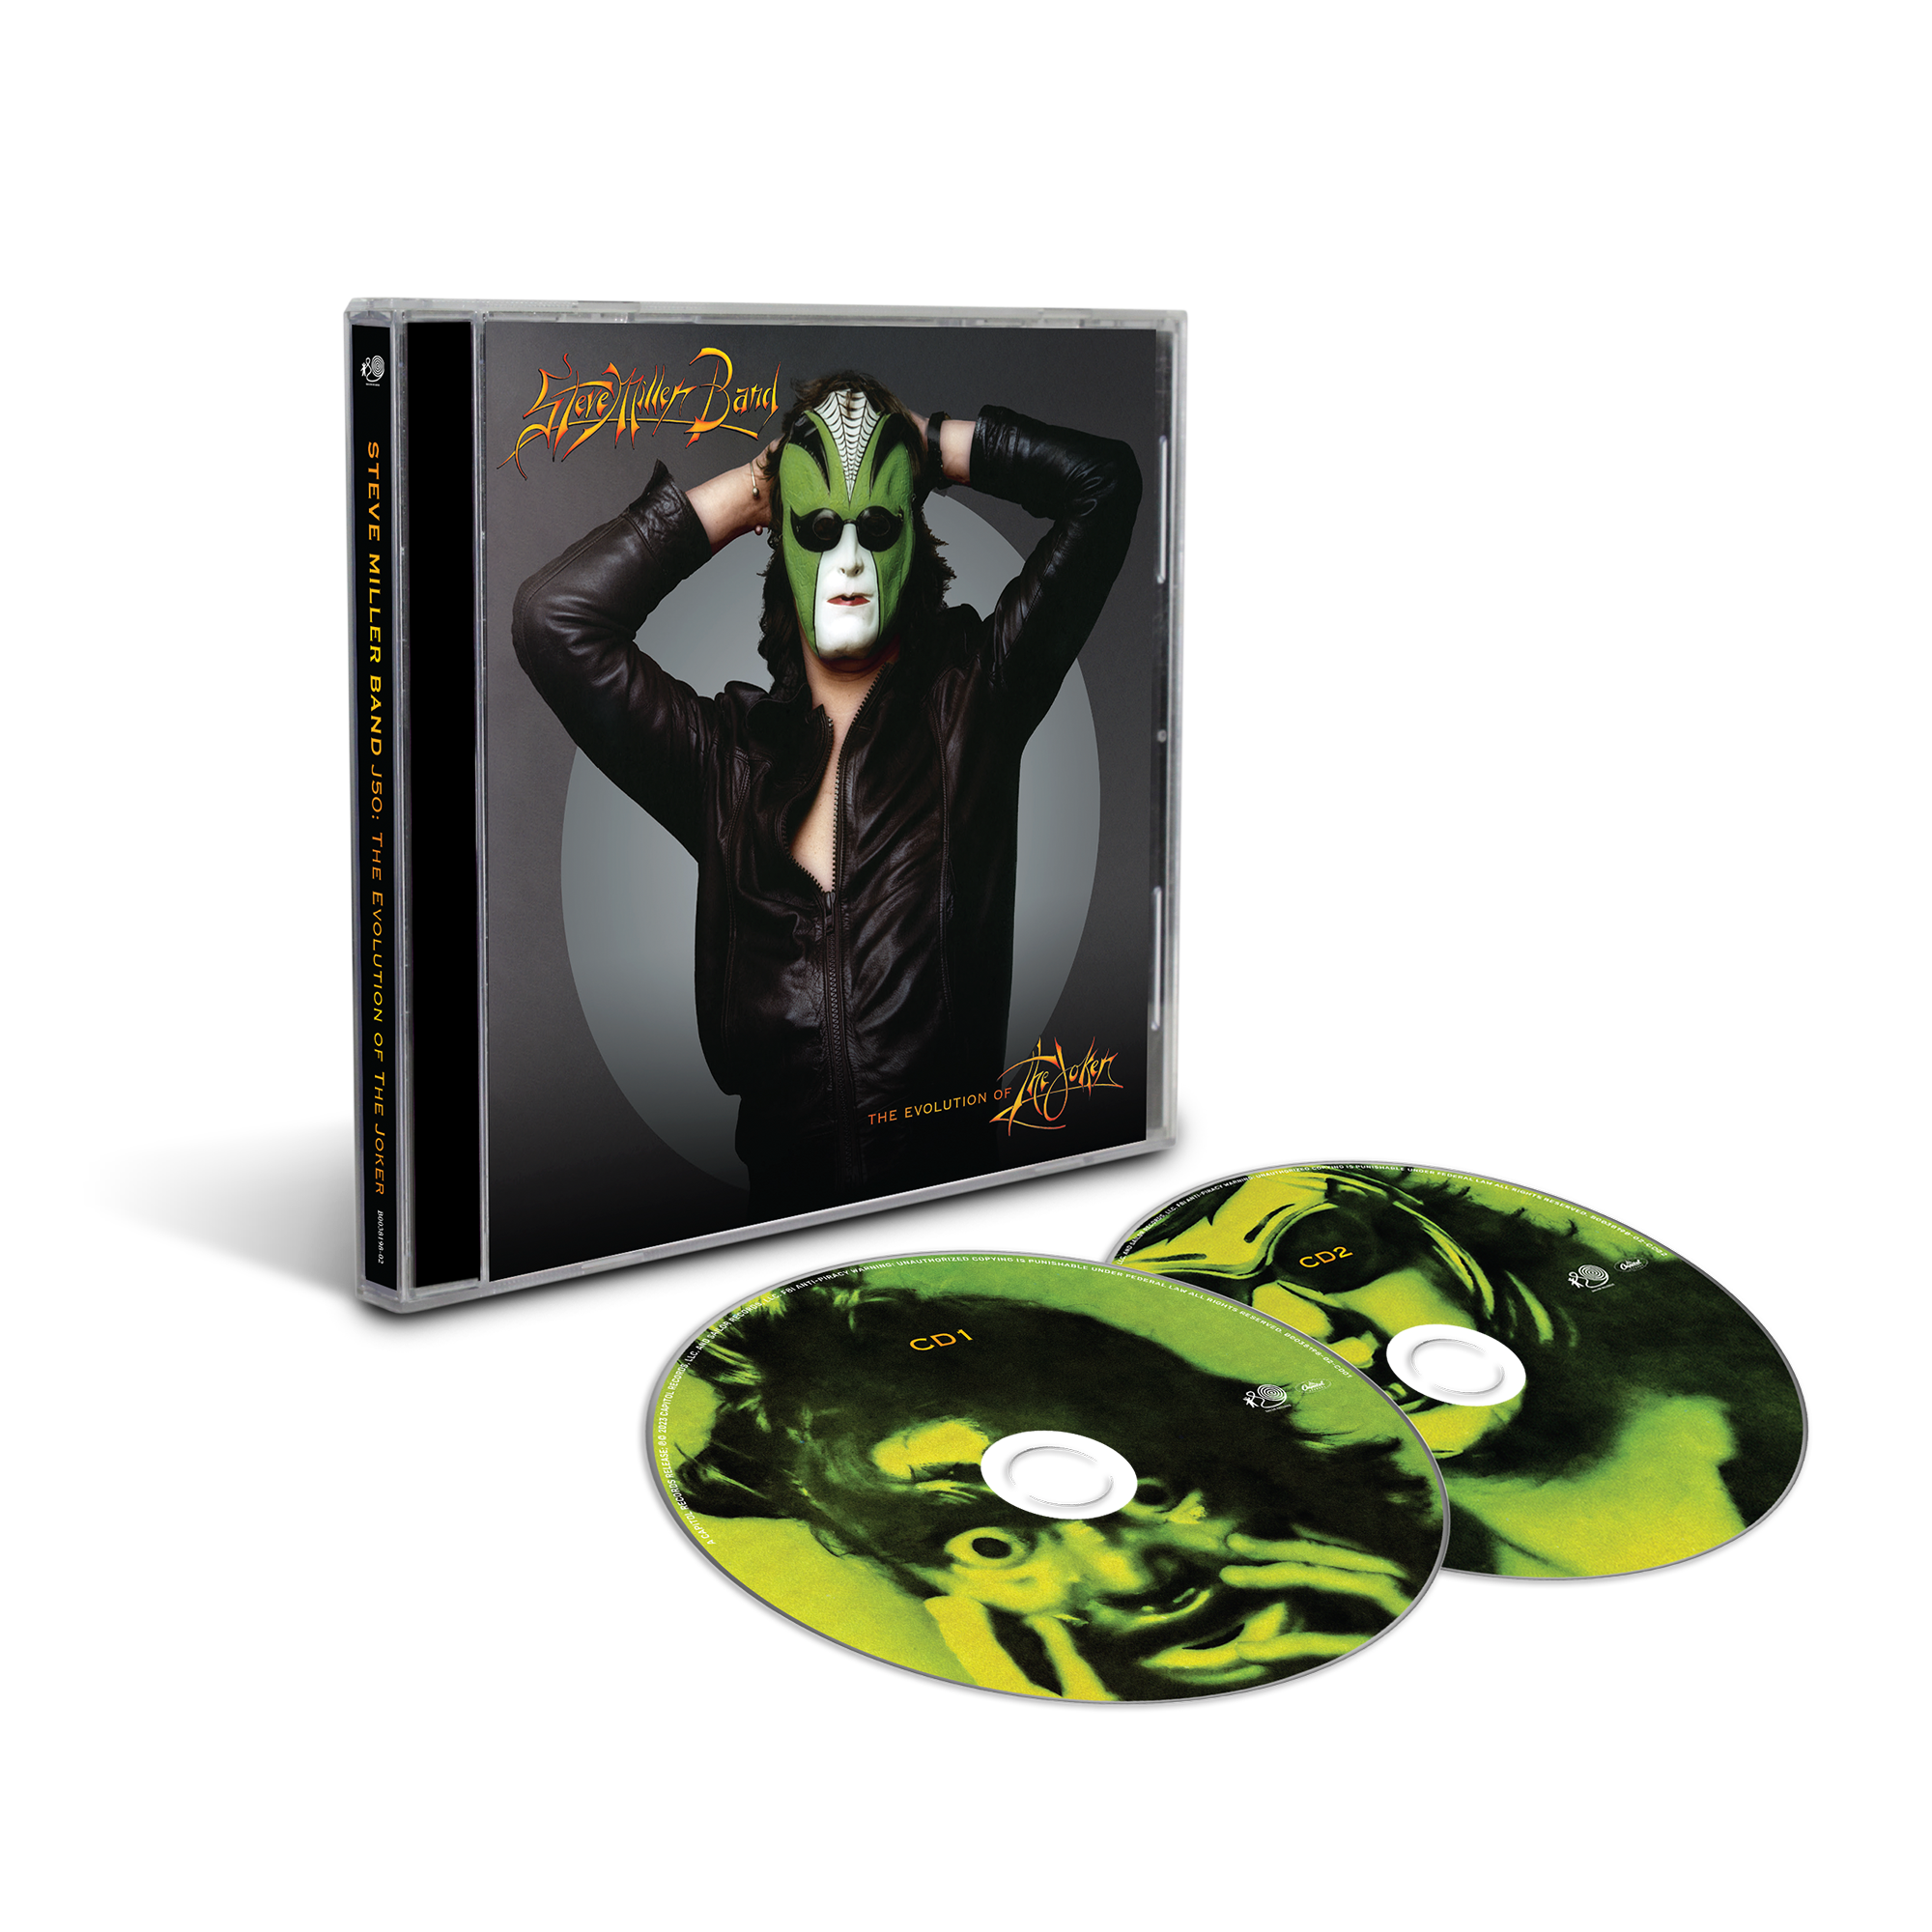 Steve Miller Band - J50 - The Evolution of the Joker: 2CD